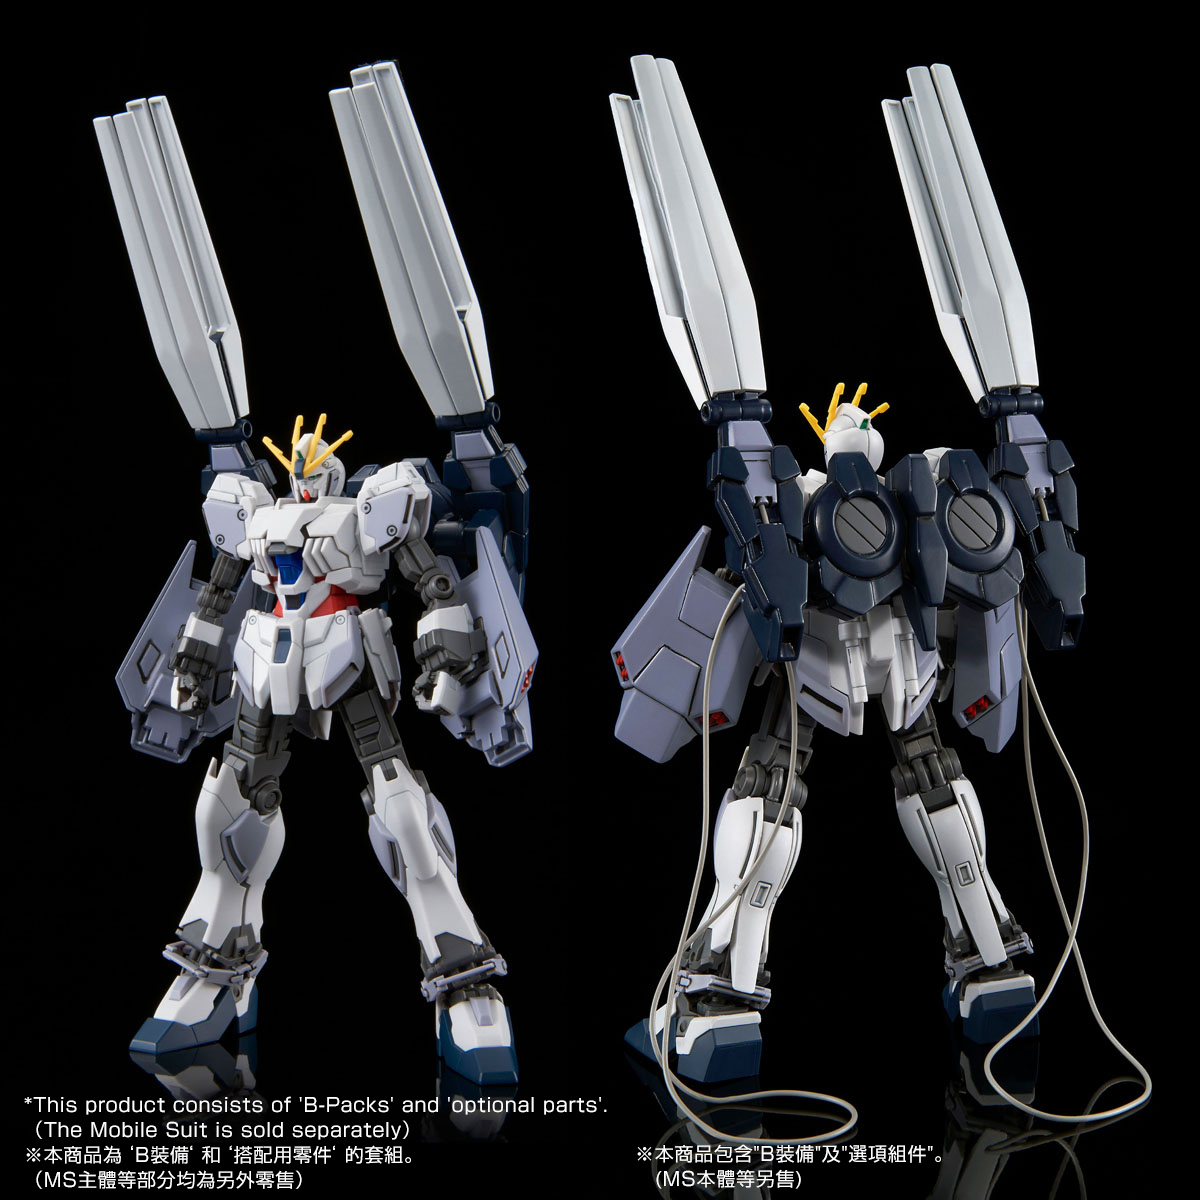 Hg 1 144 B Packs Expansion Set For Narrative Gundam Premium Bandai Singapore